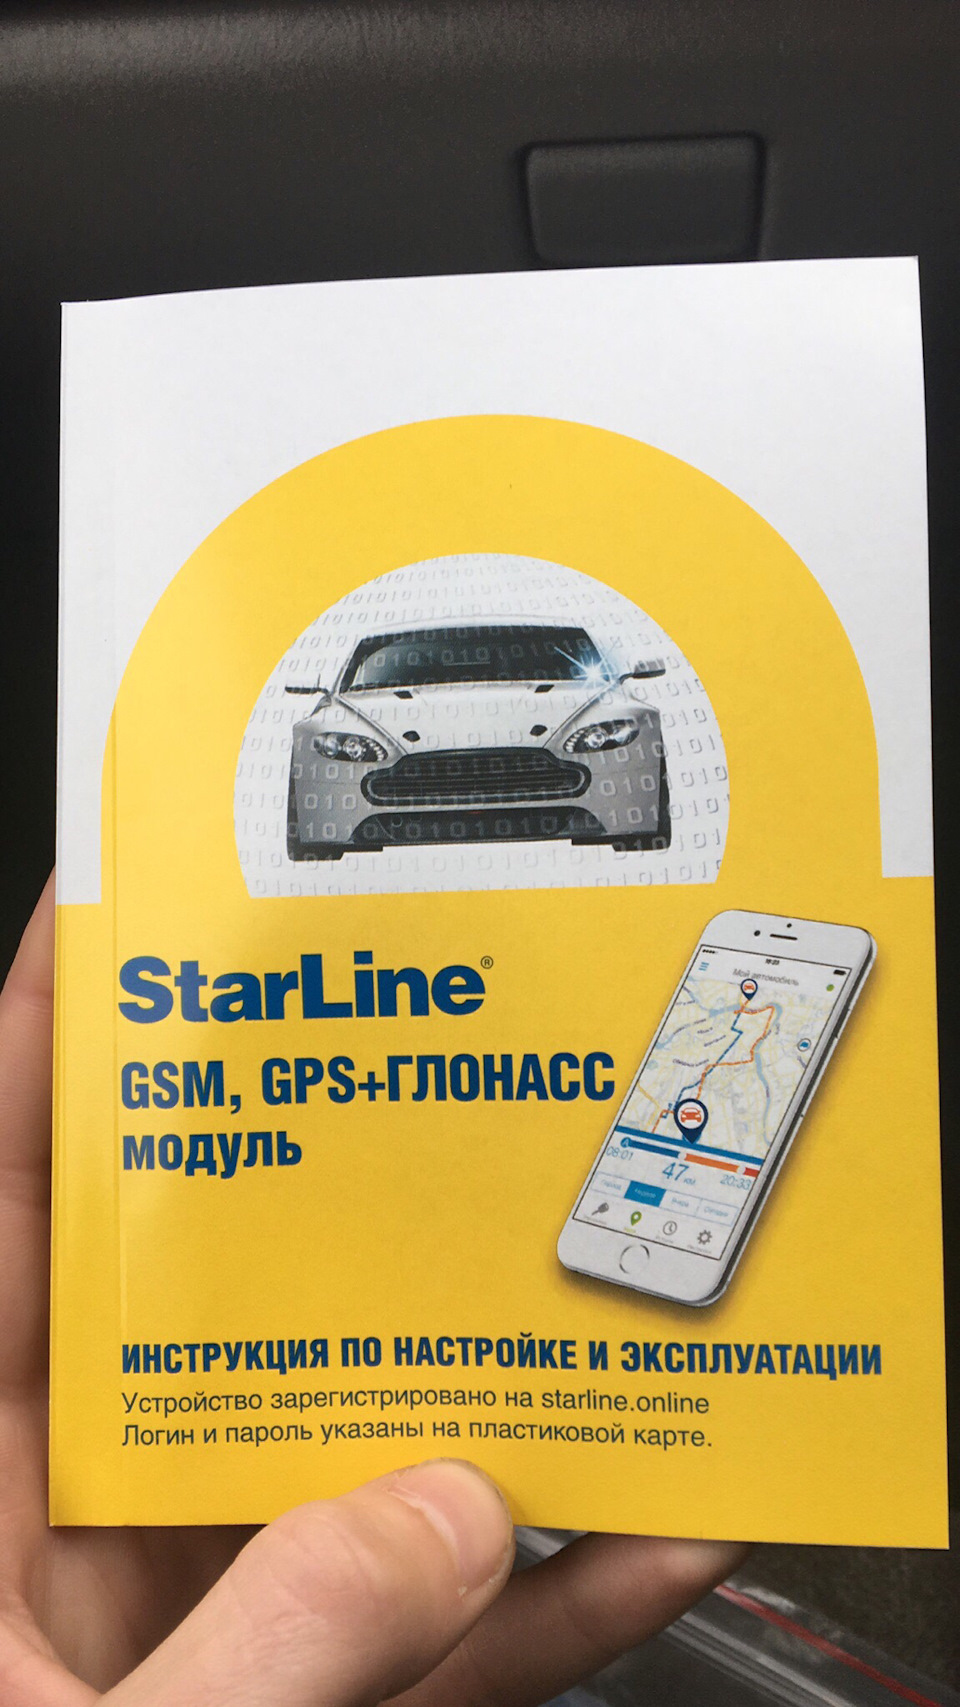 Starline gsm отзывы. Авто GSM модуль ГЛОНАСС. Пластиковая карта GSM STARLINE. GSM модуль STARLINE a93 что дает. Карточка авторизации старлайн GSM.